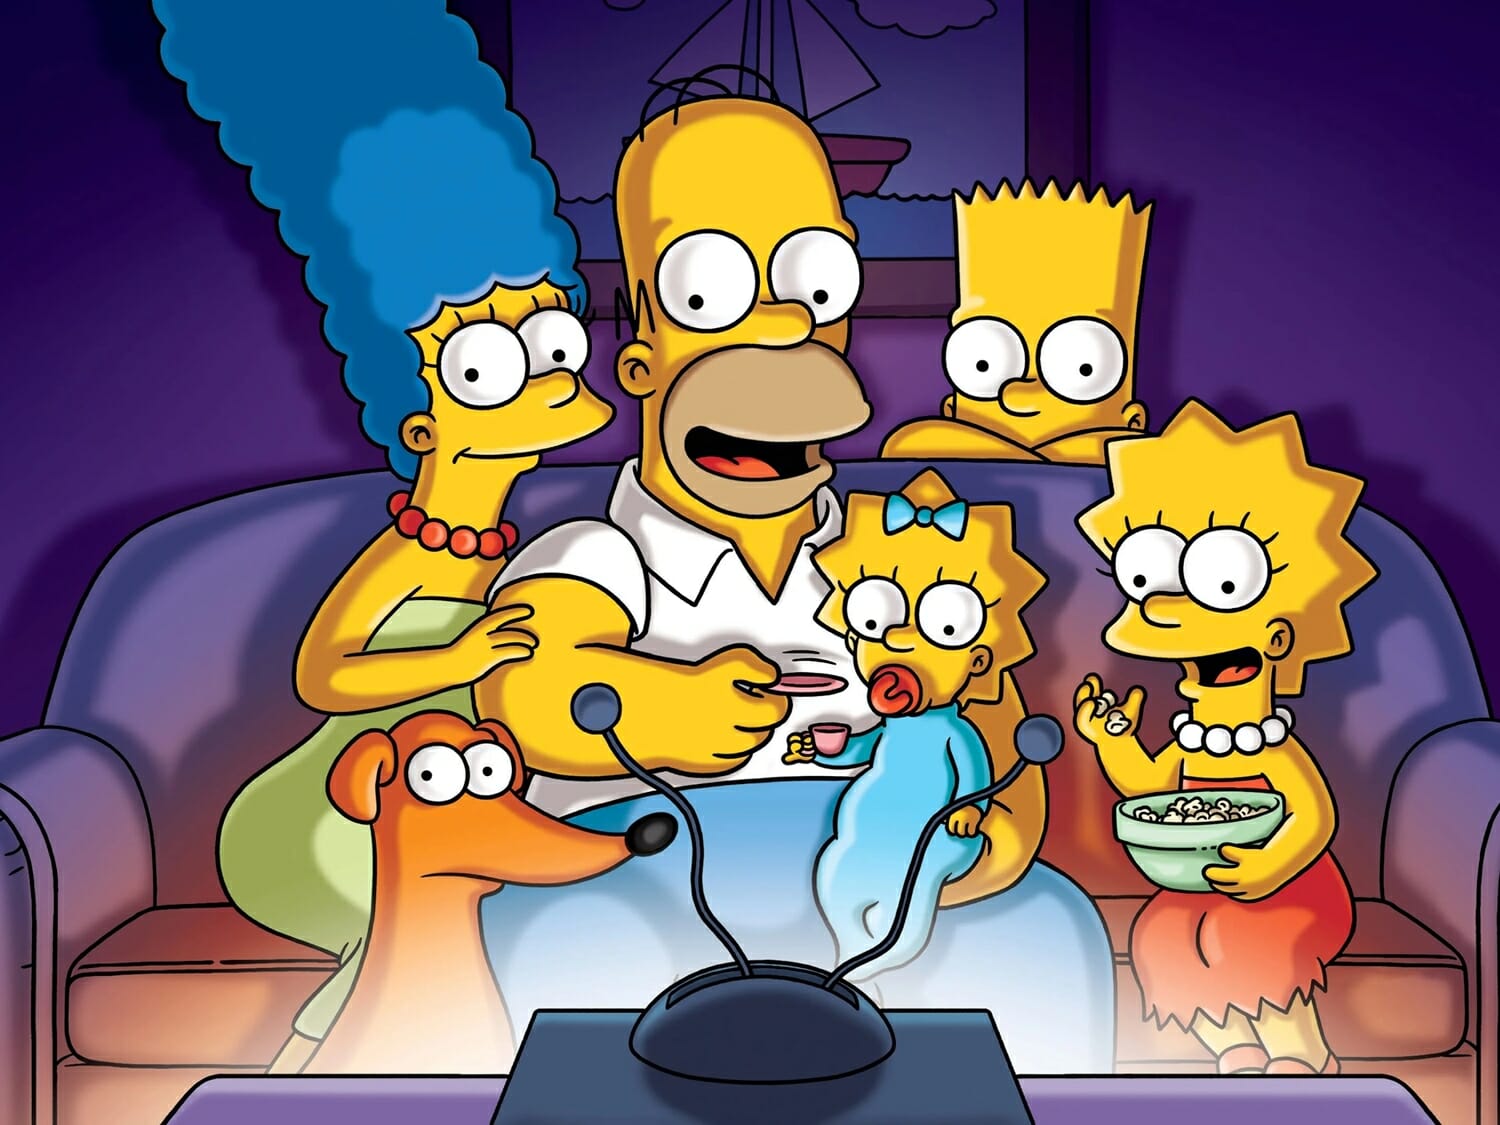 Os Simpsons está em sua 33ª temporada